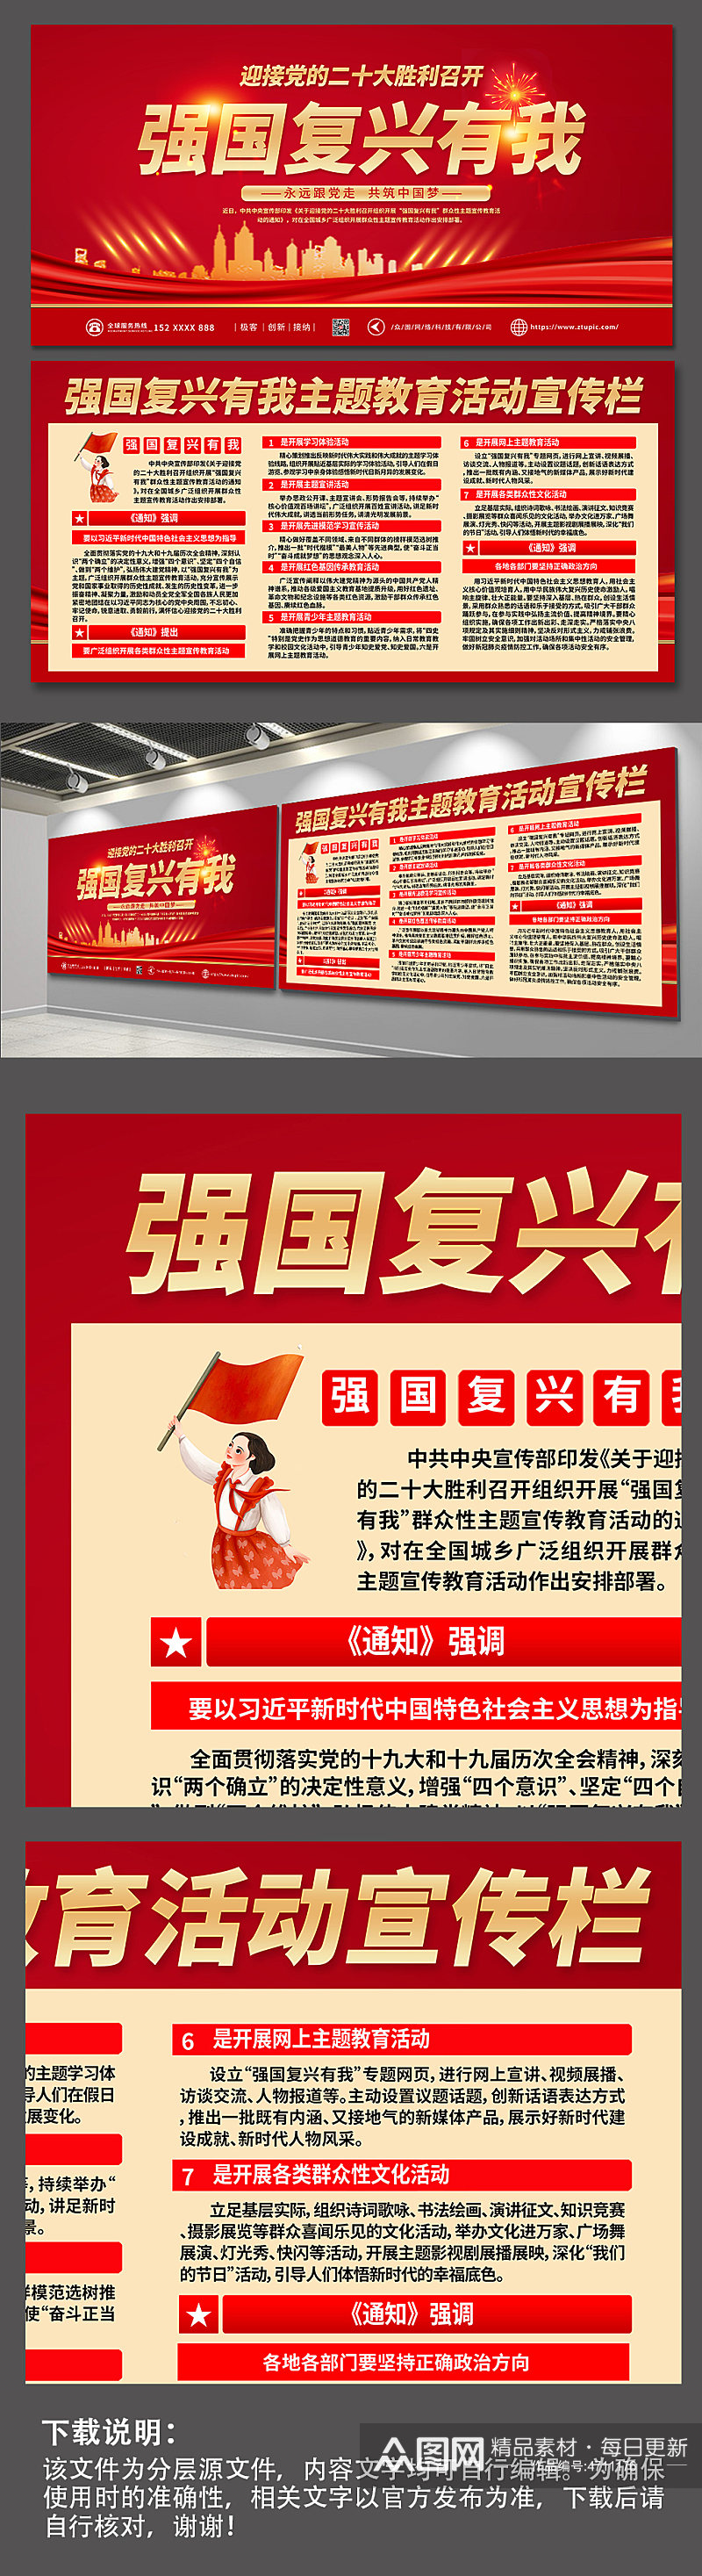 红色简约群众性主题宣传教育活动党建展板素材